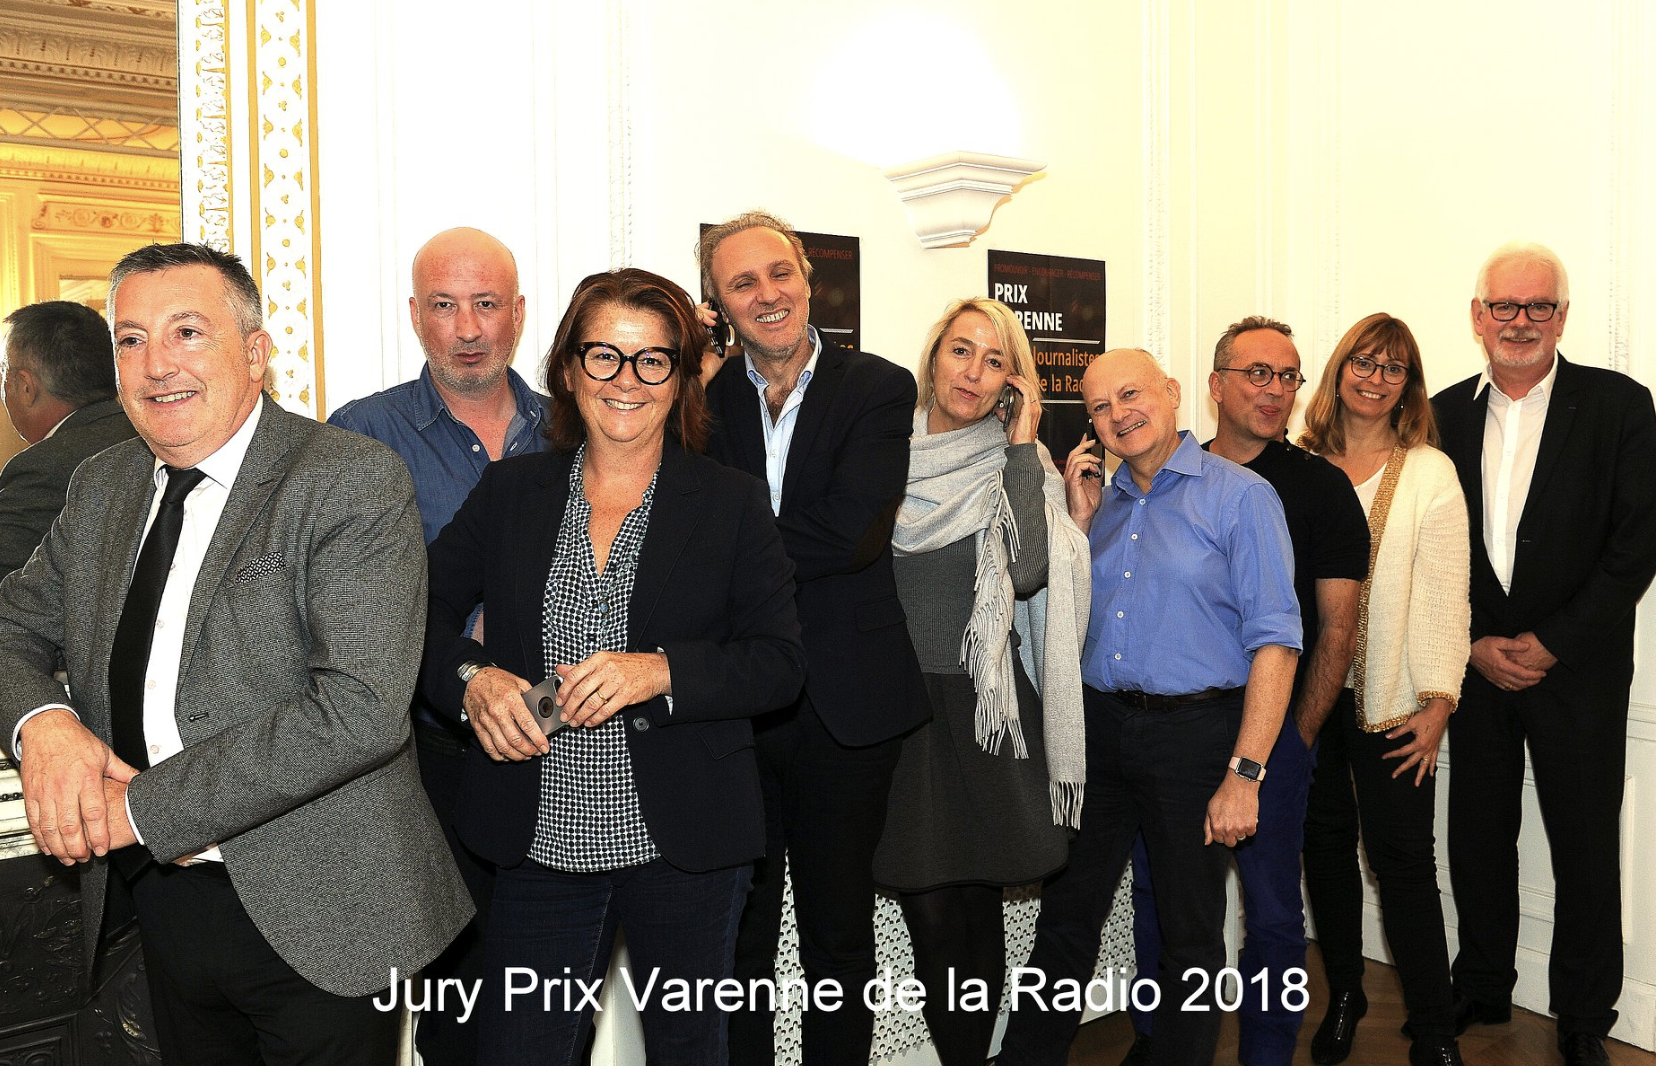 Le premier des jurys des prix Varenne du journalisme s'est réuni, ce  soir, pour distinguer les meilleurs reportages radio parmi 89 dossiers de candidatures déposés tant par des journalistes que des étudiants en journalisme.